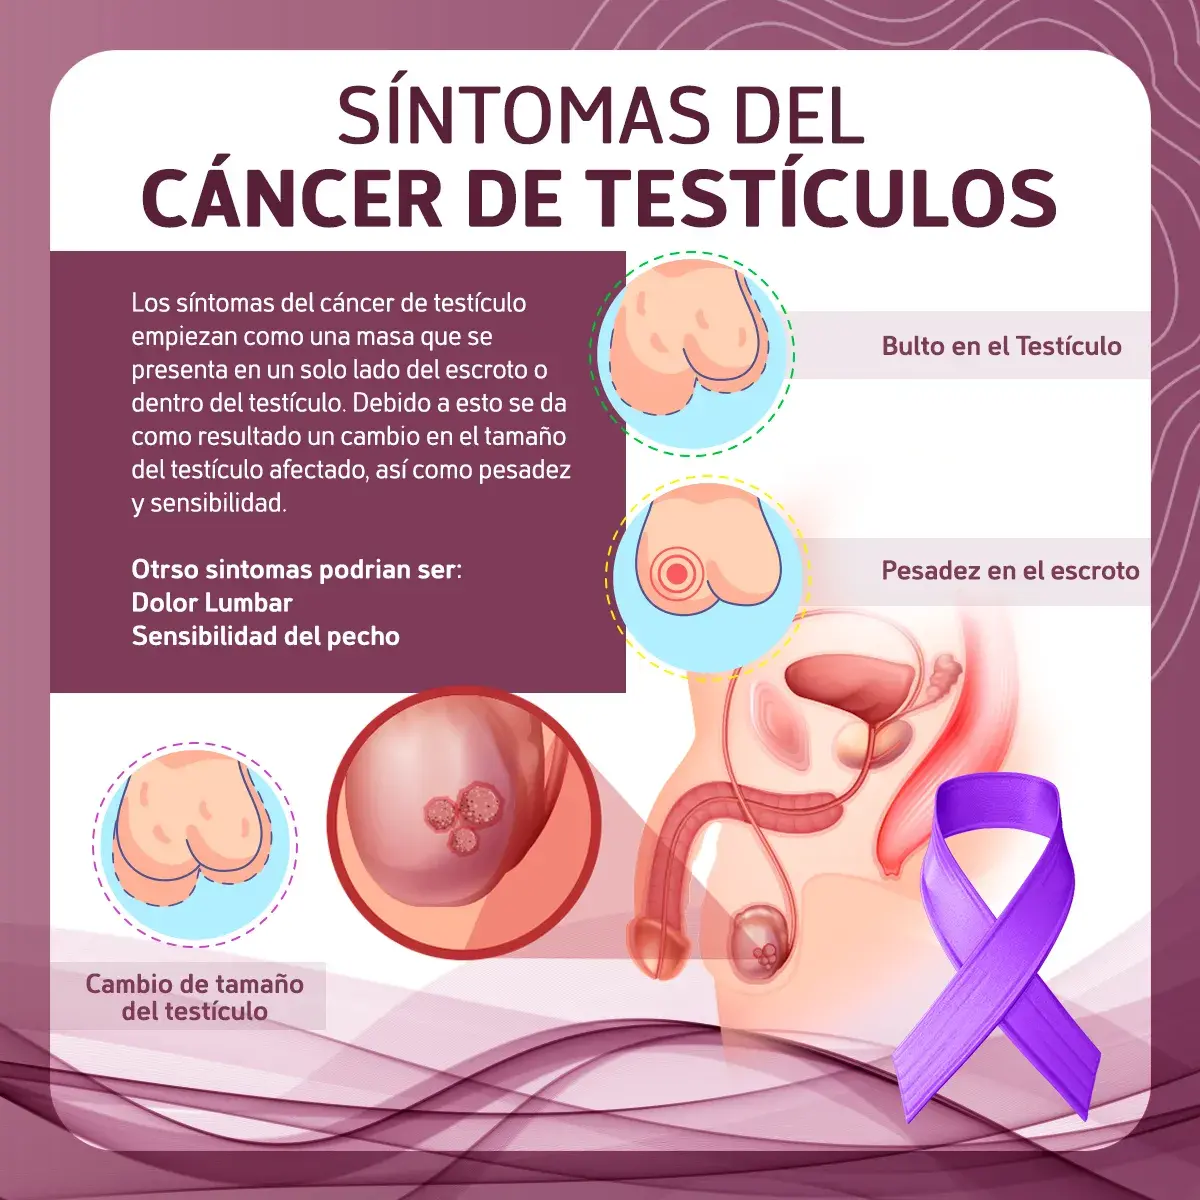 Síntomas del cáncer de testículos (bulto en el testículo, pesadez en el escroto, cambio de tamaño)